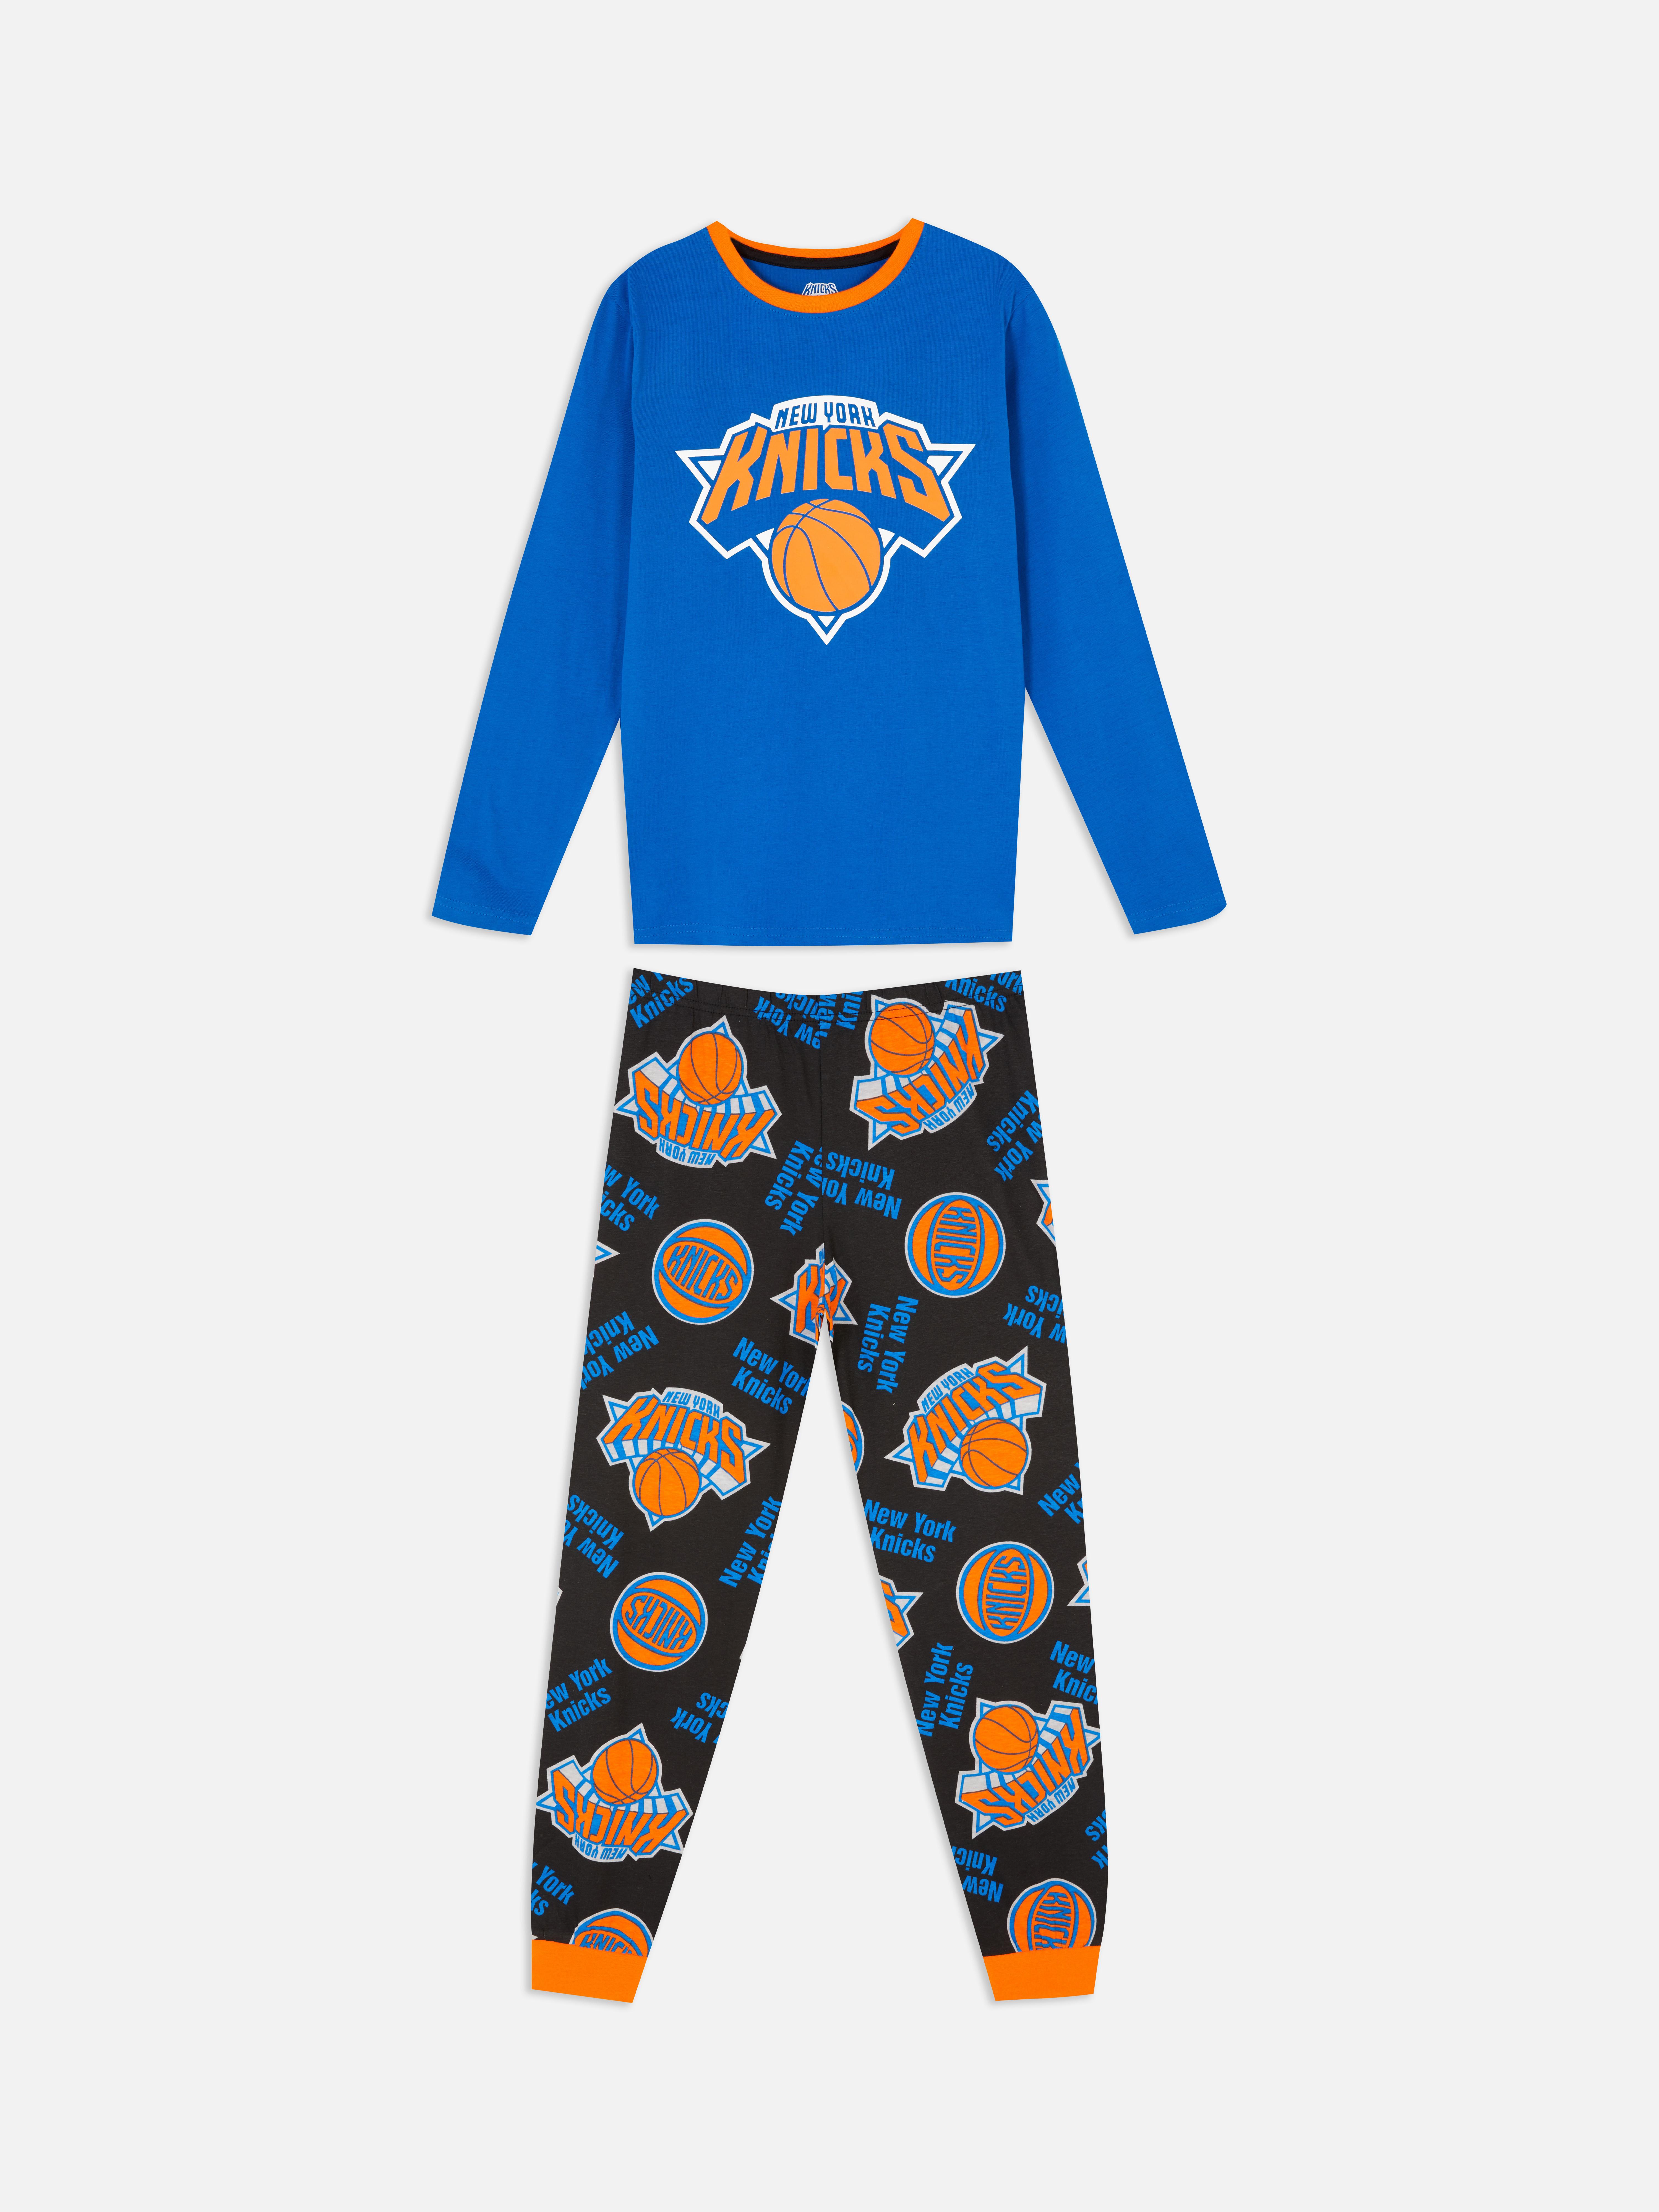 Pijama de los New York Knicks de la NBA Pijamas para niños | Moda para Ropa para niños | Todos productos Primark | Primark España